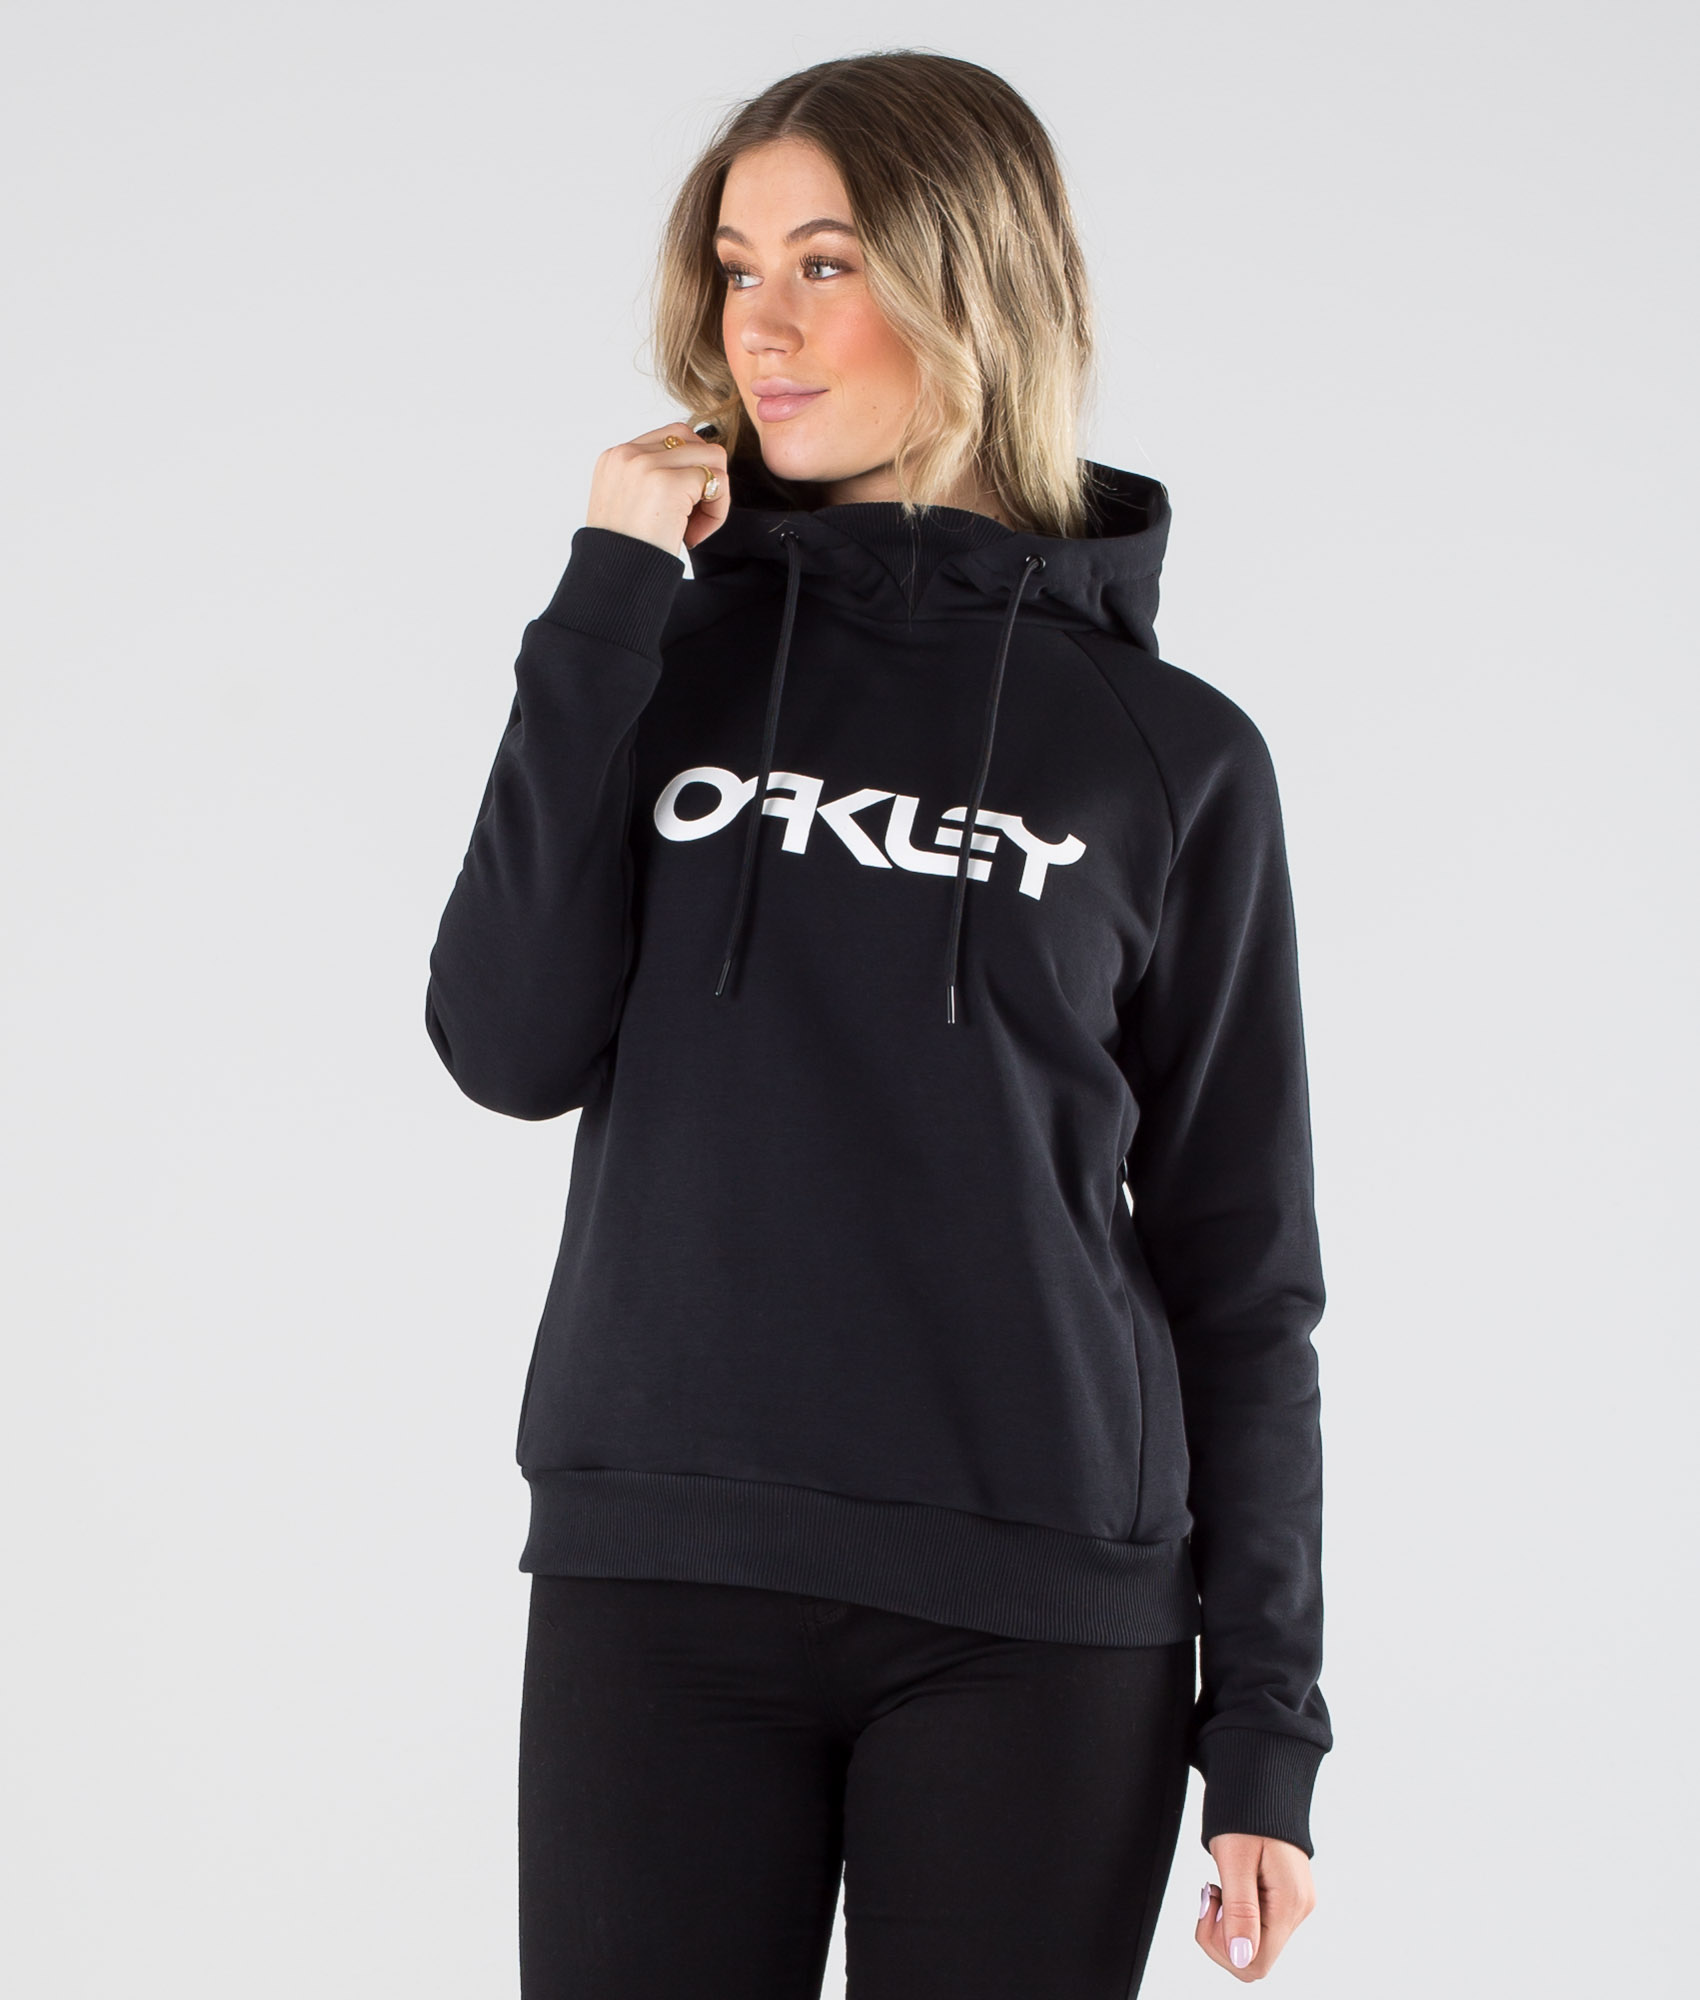 oakley sweatshirt womens